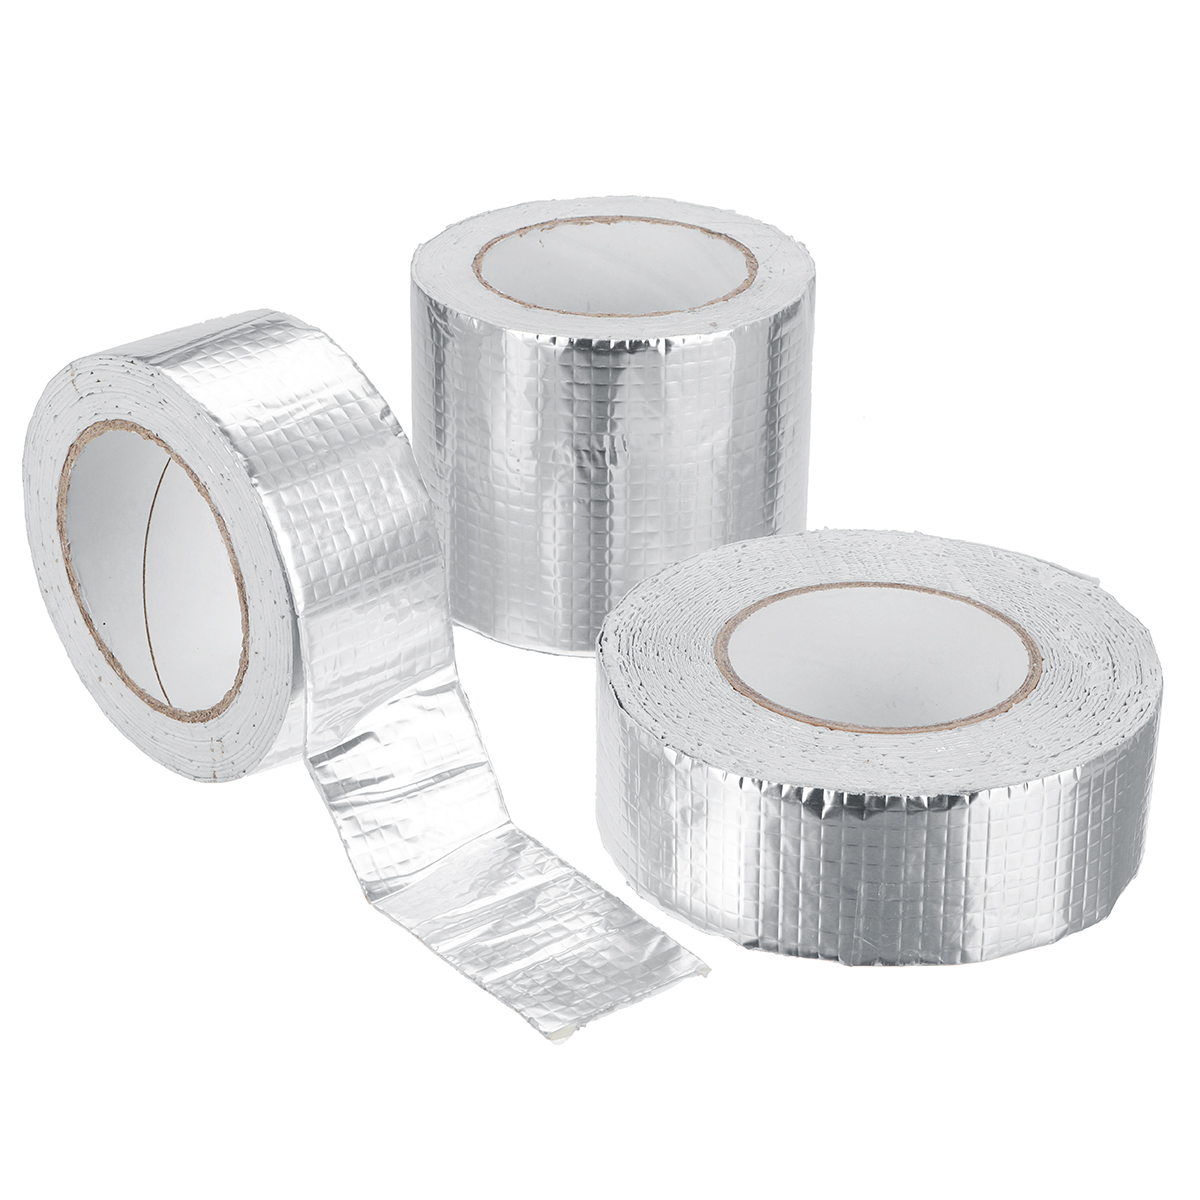 Aluminum-Foil-Butyl-Rubber-Tape-Self-Adhesive-Waterproof-Home-Roof-Pipe-Repair-Tape-1681292-2